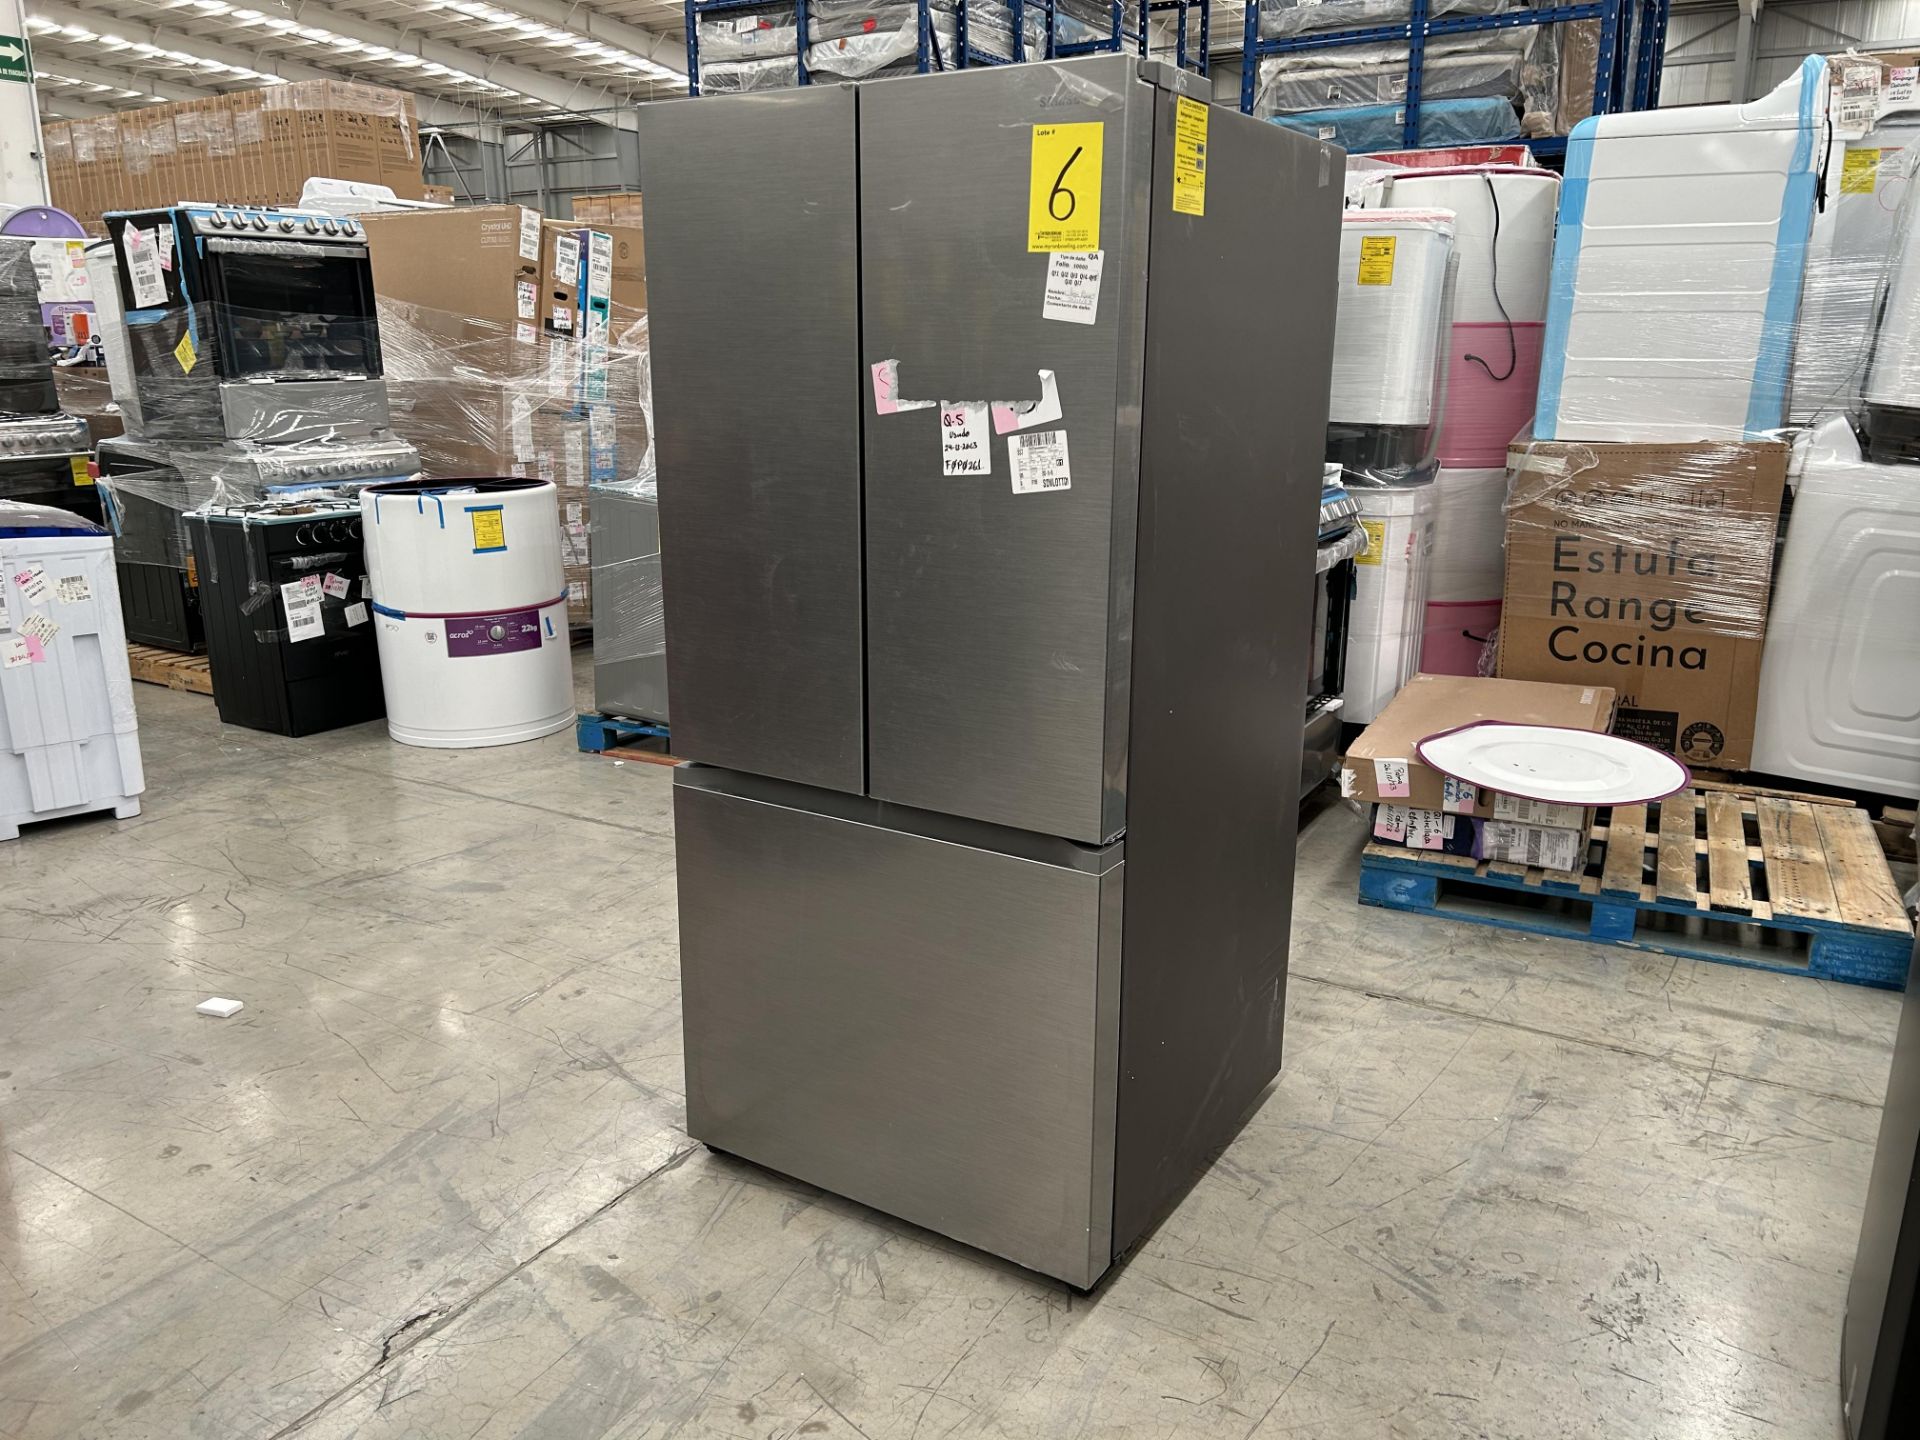 Lote de 1 Refrigerador Marca SAMSUNG, Modelo RF25C5151S9, Serie 0204N, Color GRIS (No se asegura su - Image 2 of 5